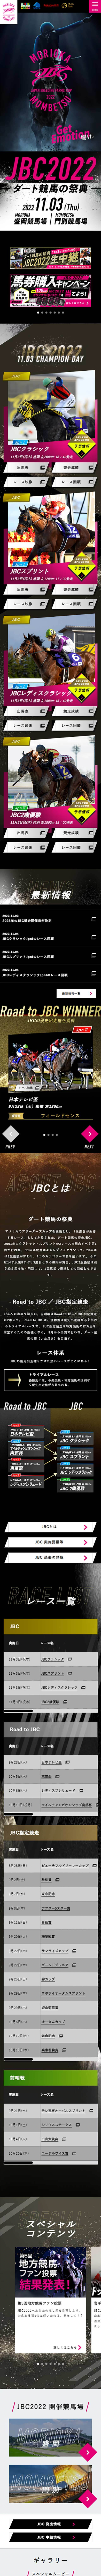 JBC2022特設サイト_sp_1